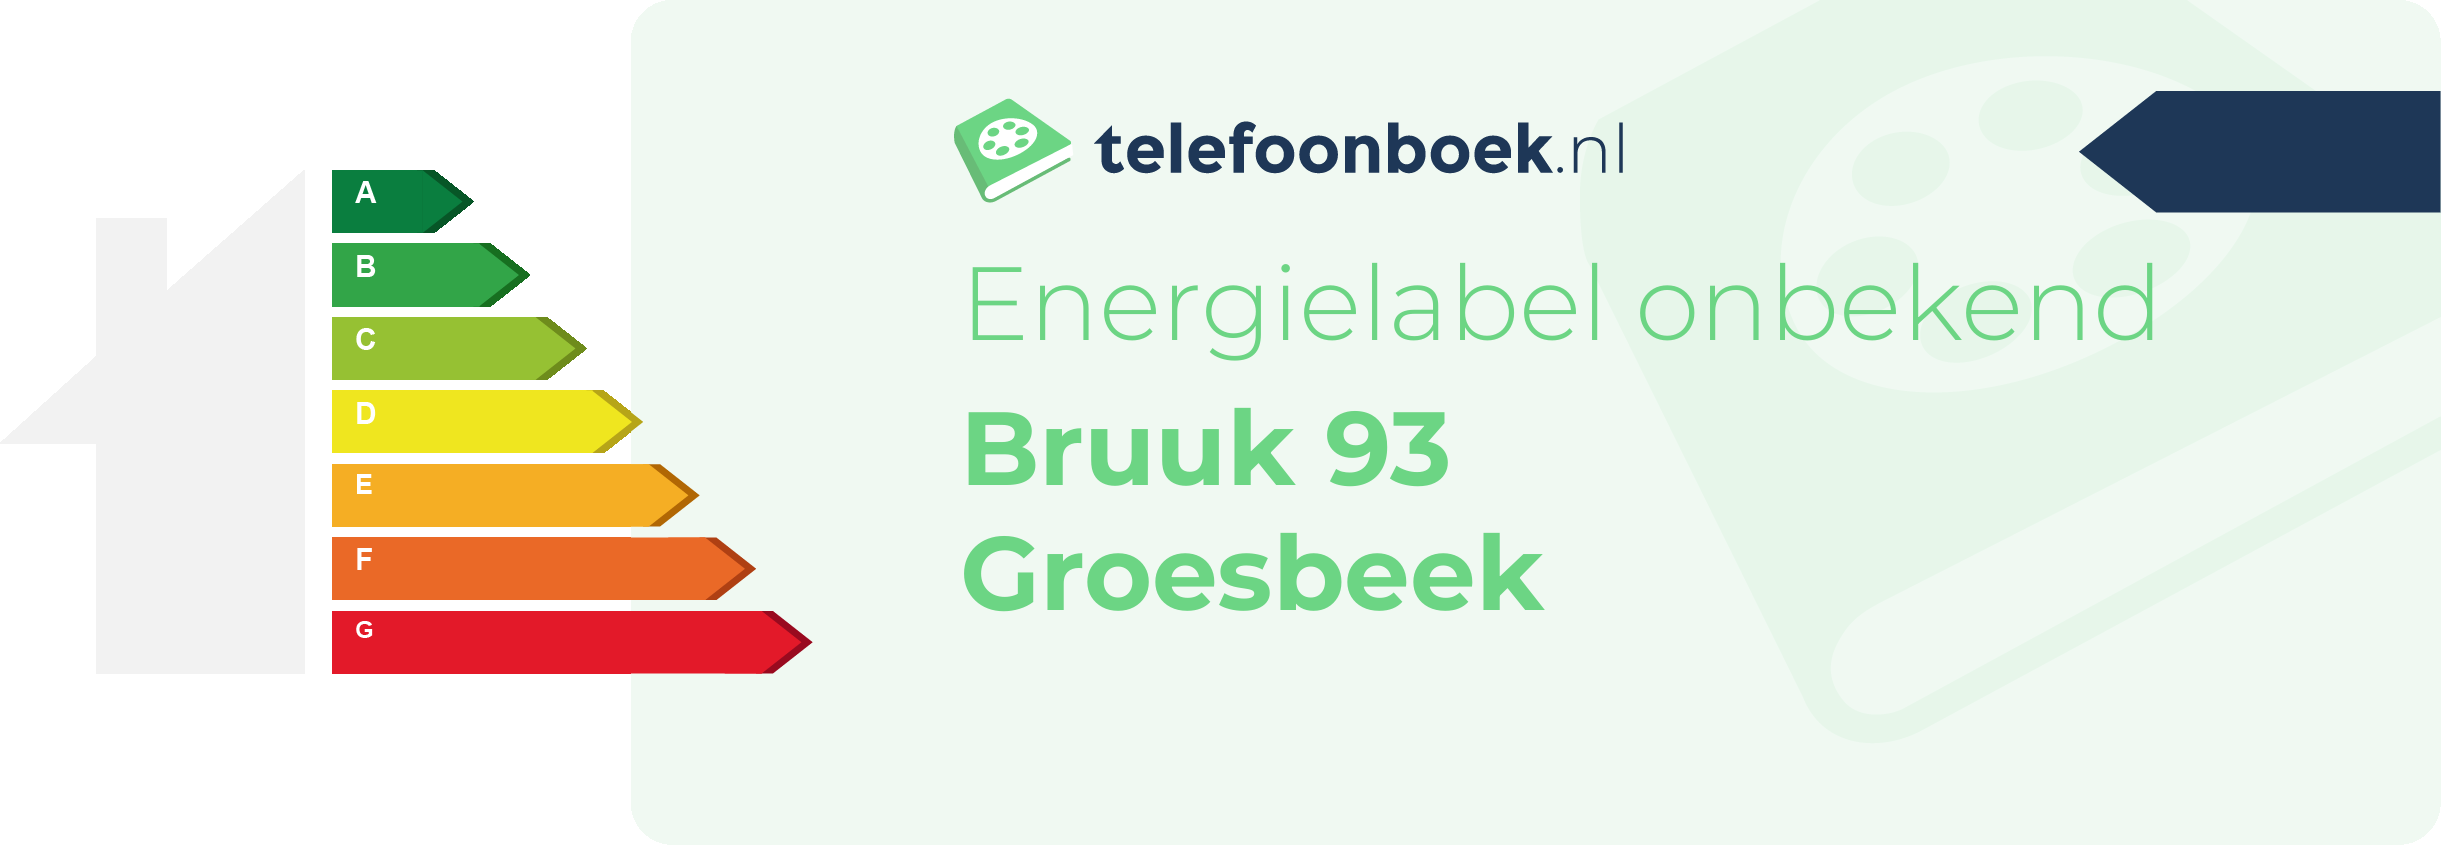 Energielabel Bruuk 93 Groesbeek